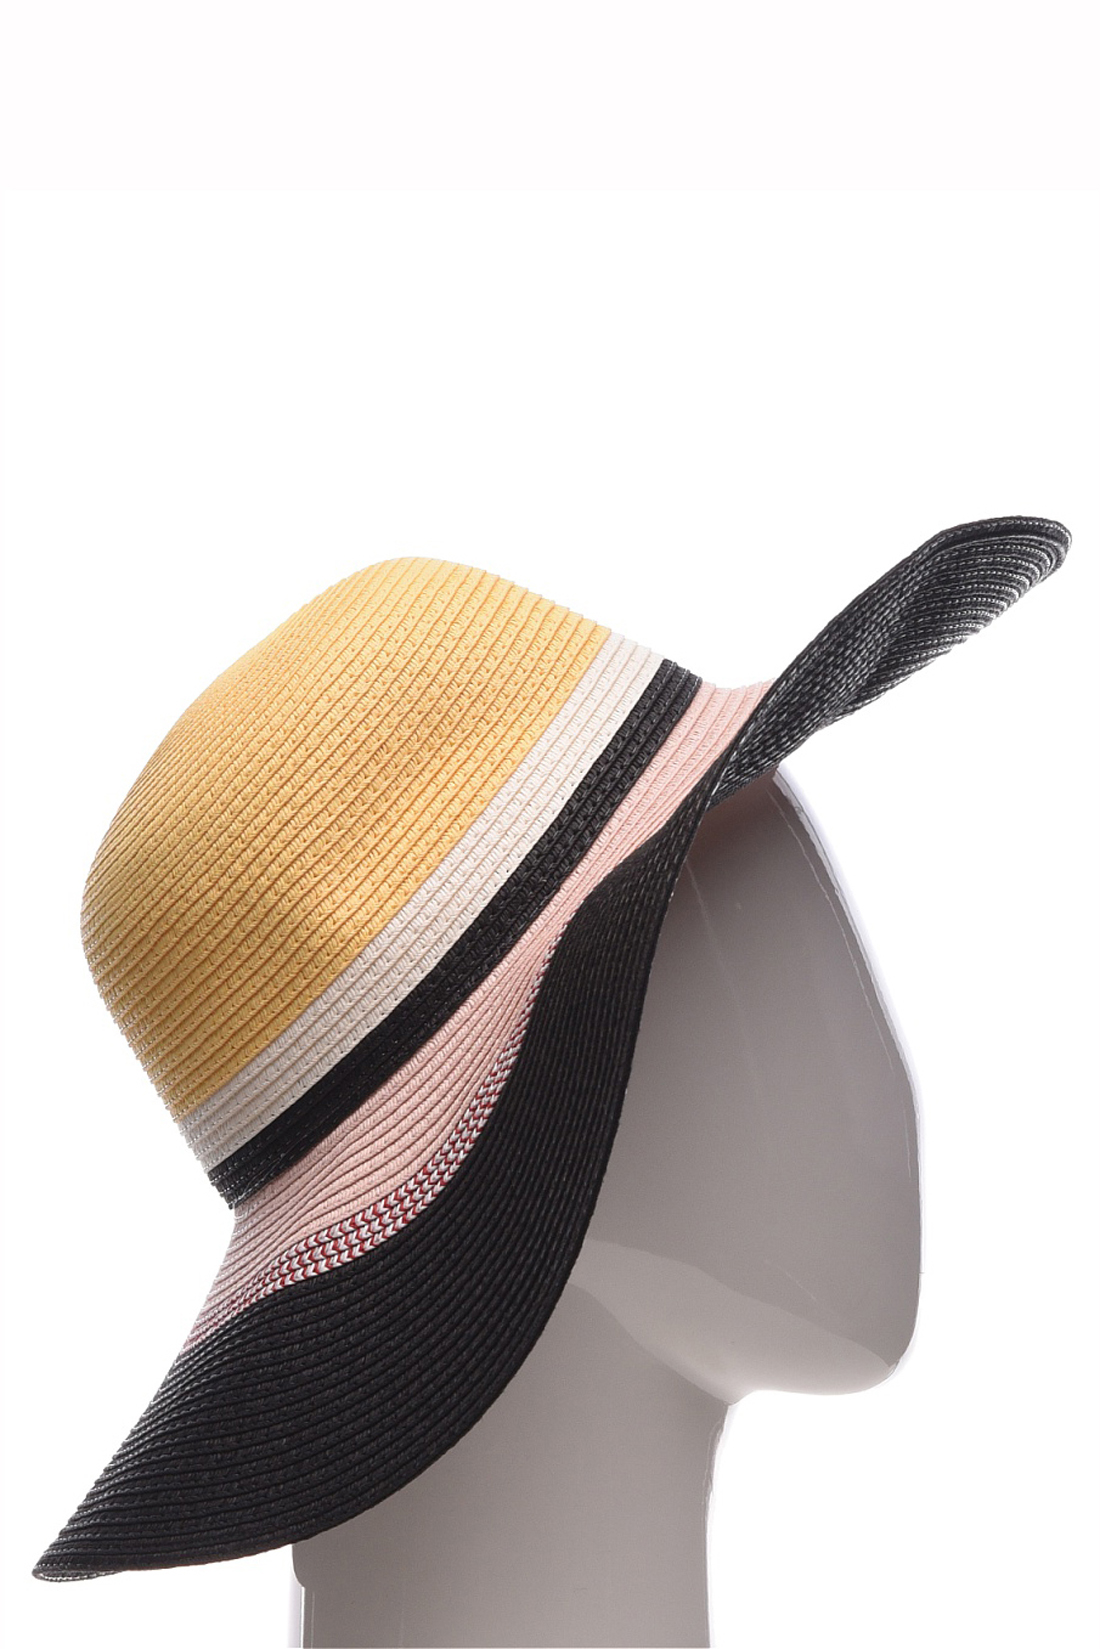 Шляпа с широкими полосами (арт. baon B349002), размер Б/р 56, цвет multicolor#многоцветный Шляпа с широкими полосами (арт. baon B349002) - фото 3